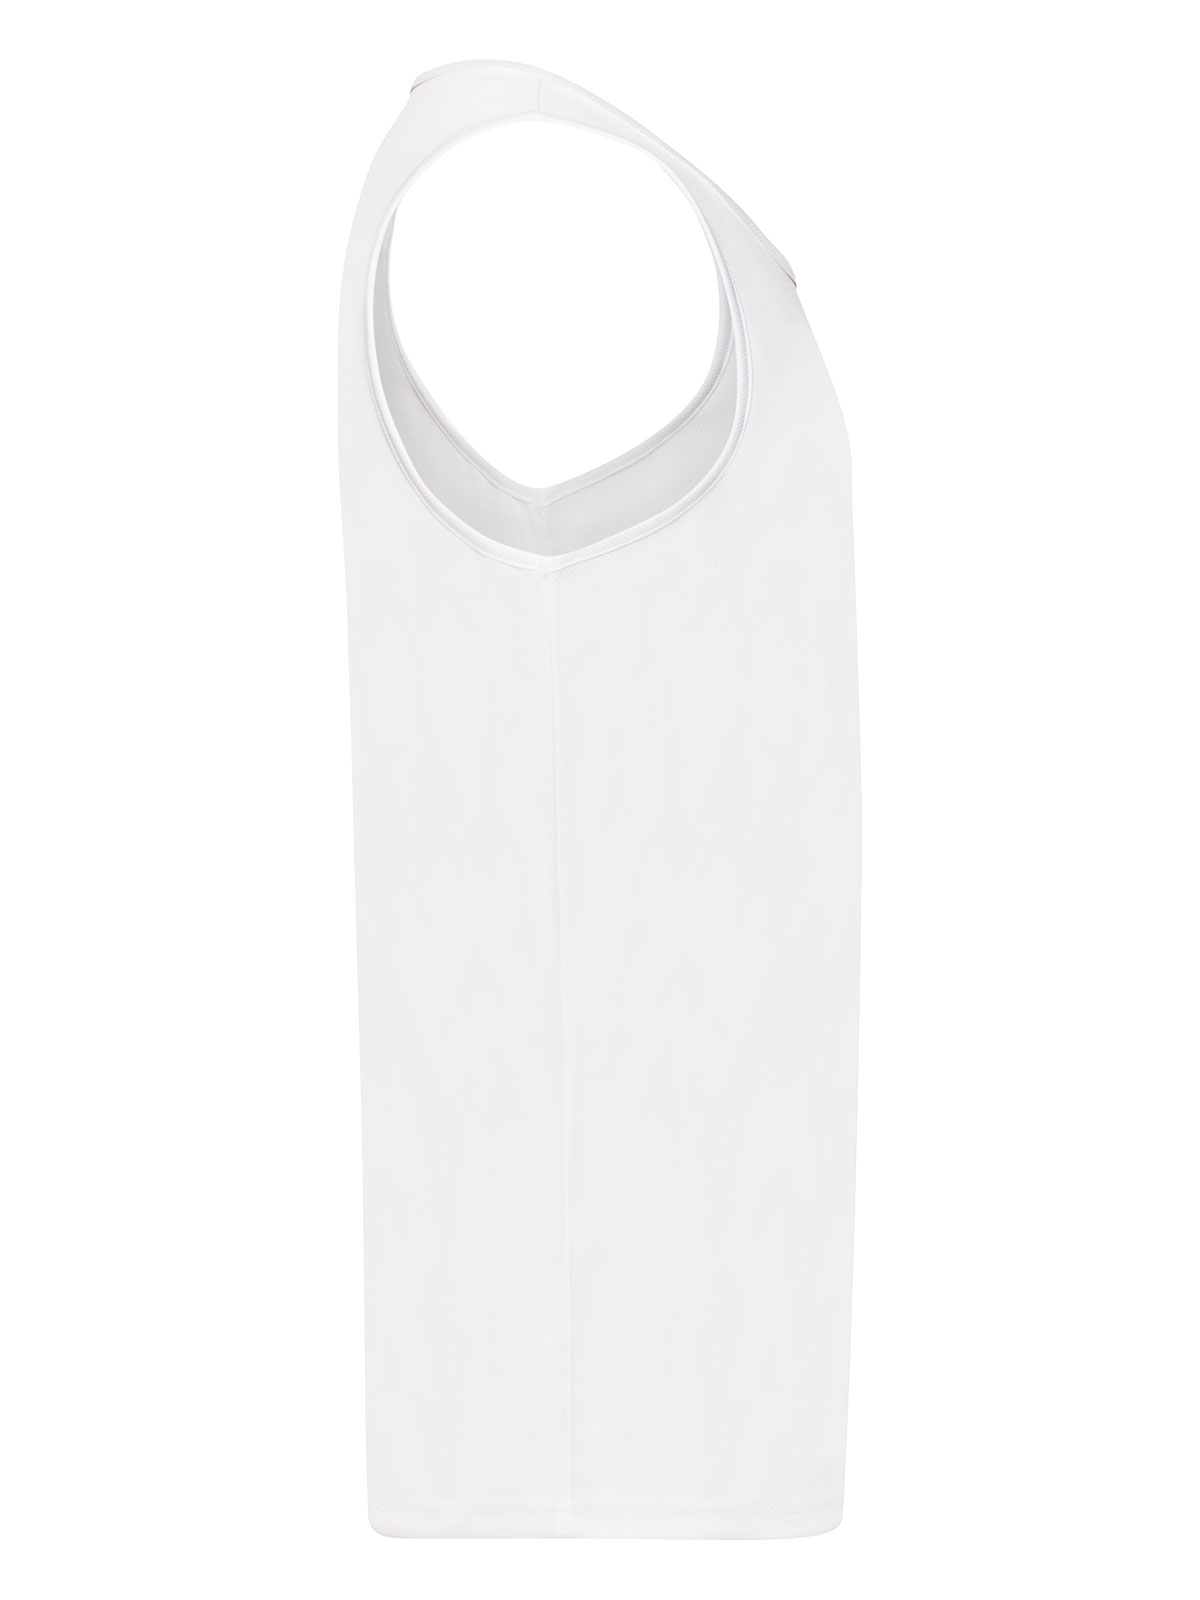 performance-vest-white.webp